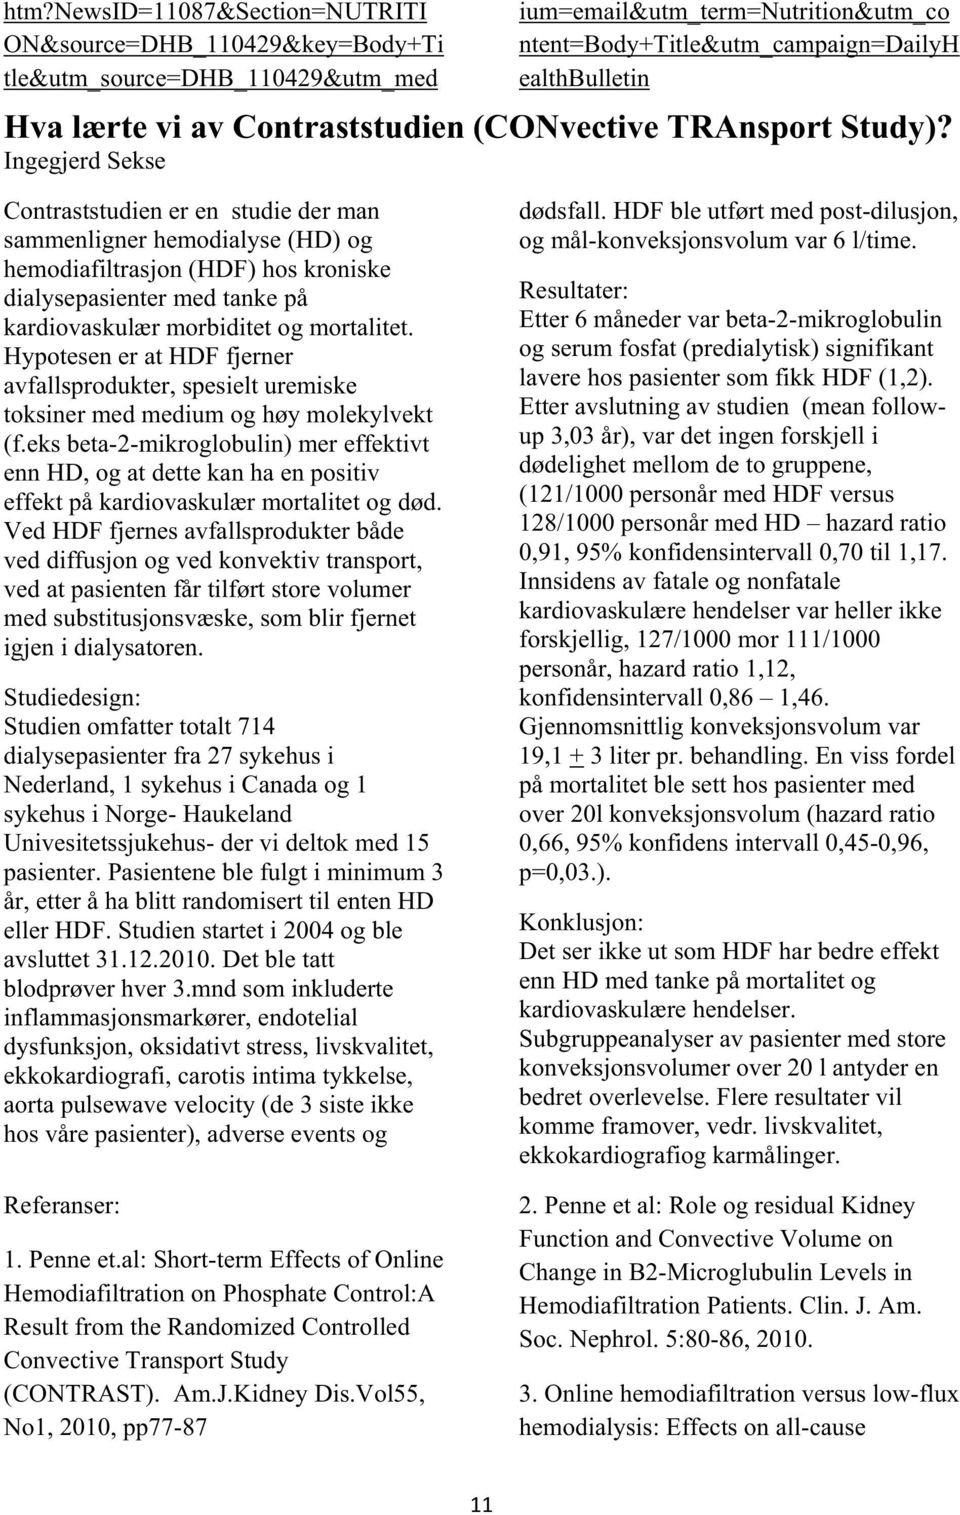 Ingegjerd Sekse Contraststudien er en studie der man sammenligner hemodialyse (HD) og hemodiafiltrasjon (HDF) hos kroniske dialysepasienter med tanke på kardiovaskulær morbiditet og mortalitet.